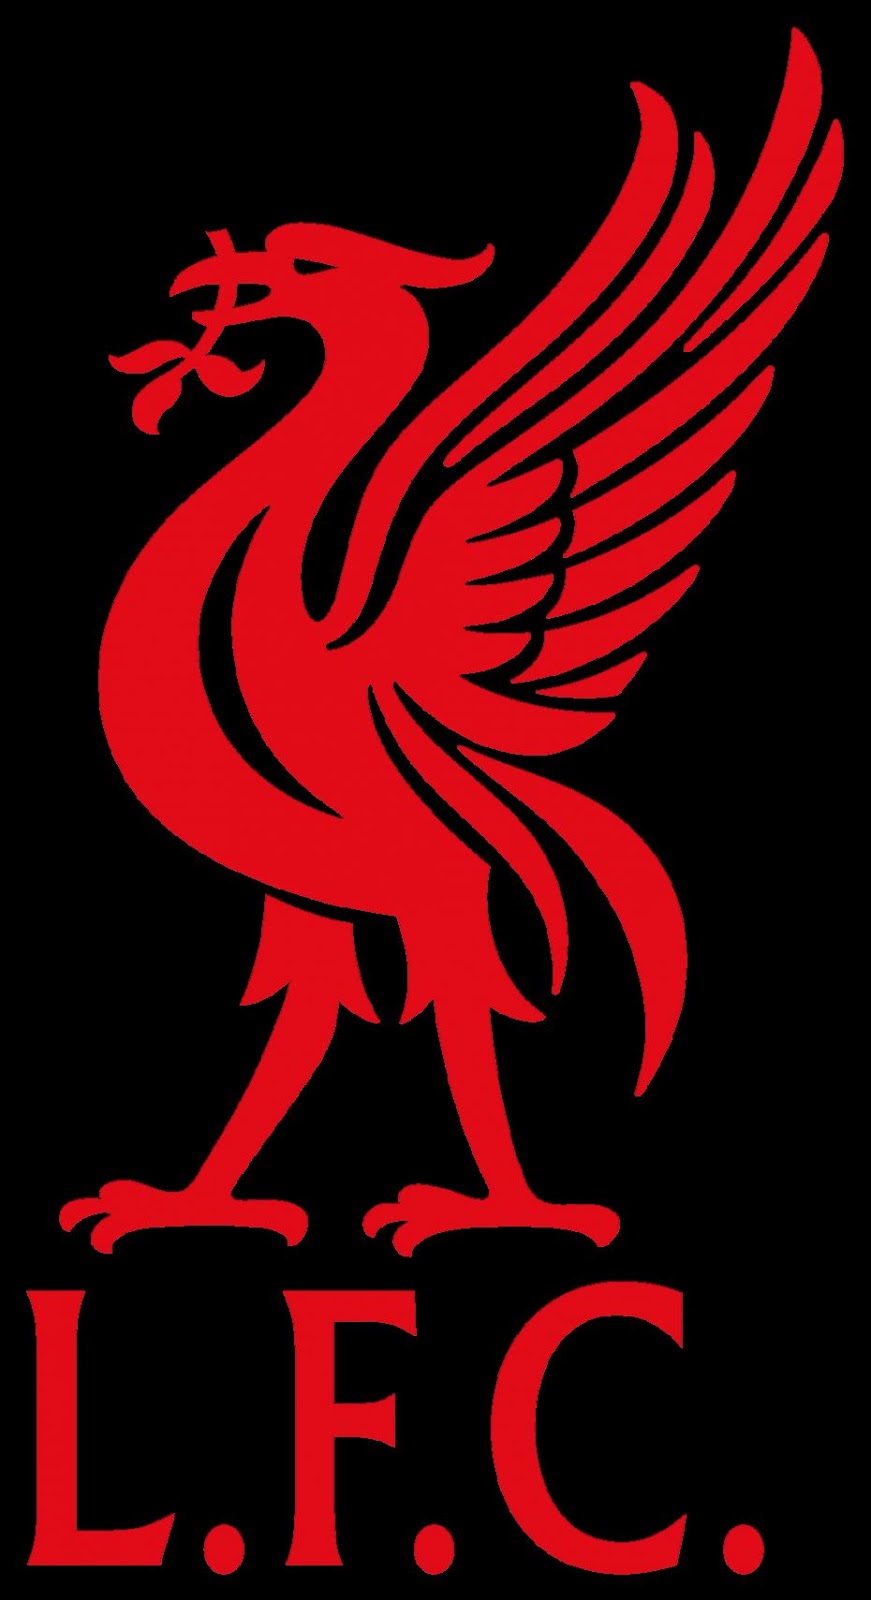 Liverpool Fc Logo Hd | hippiehippieshakeshake